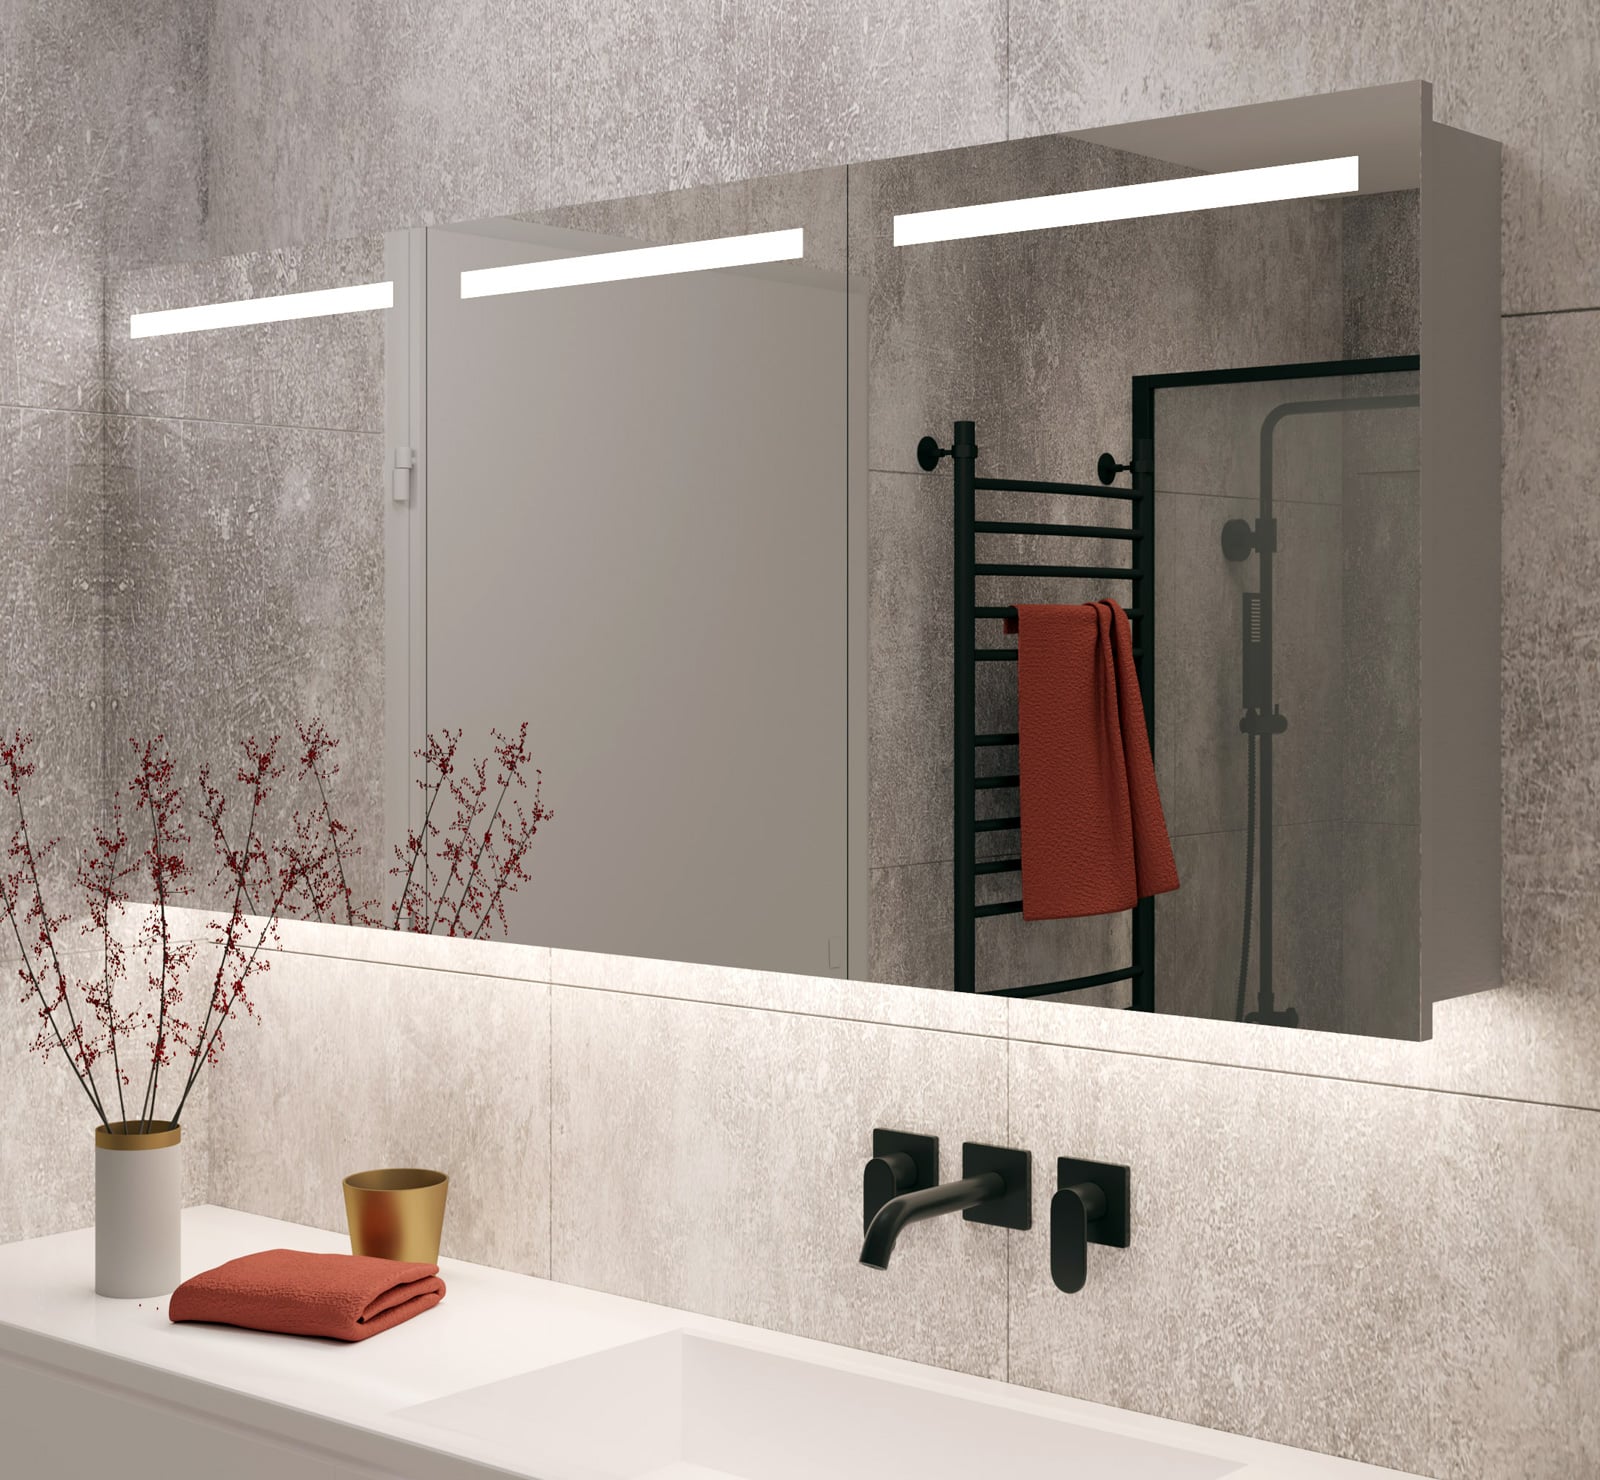 160 cm brede badkamer spiegelkast met verlichting en verwarming